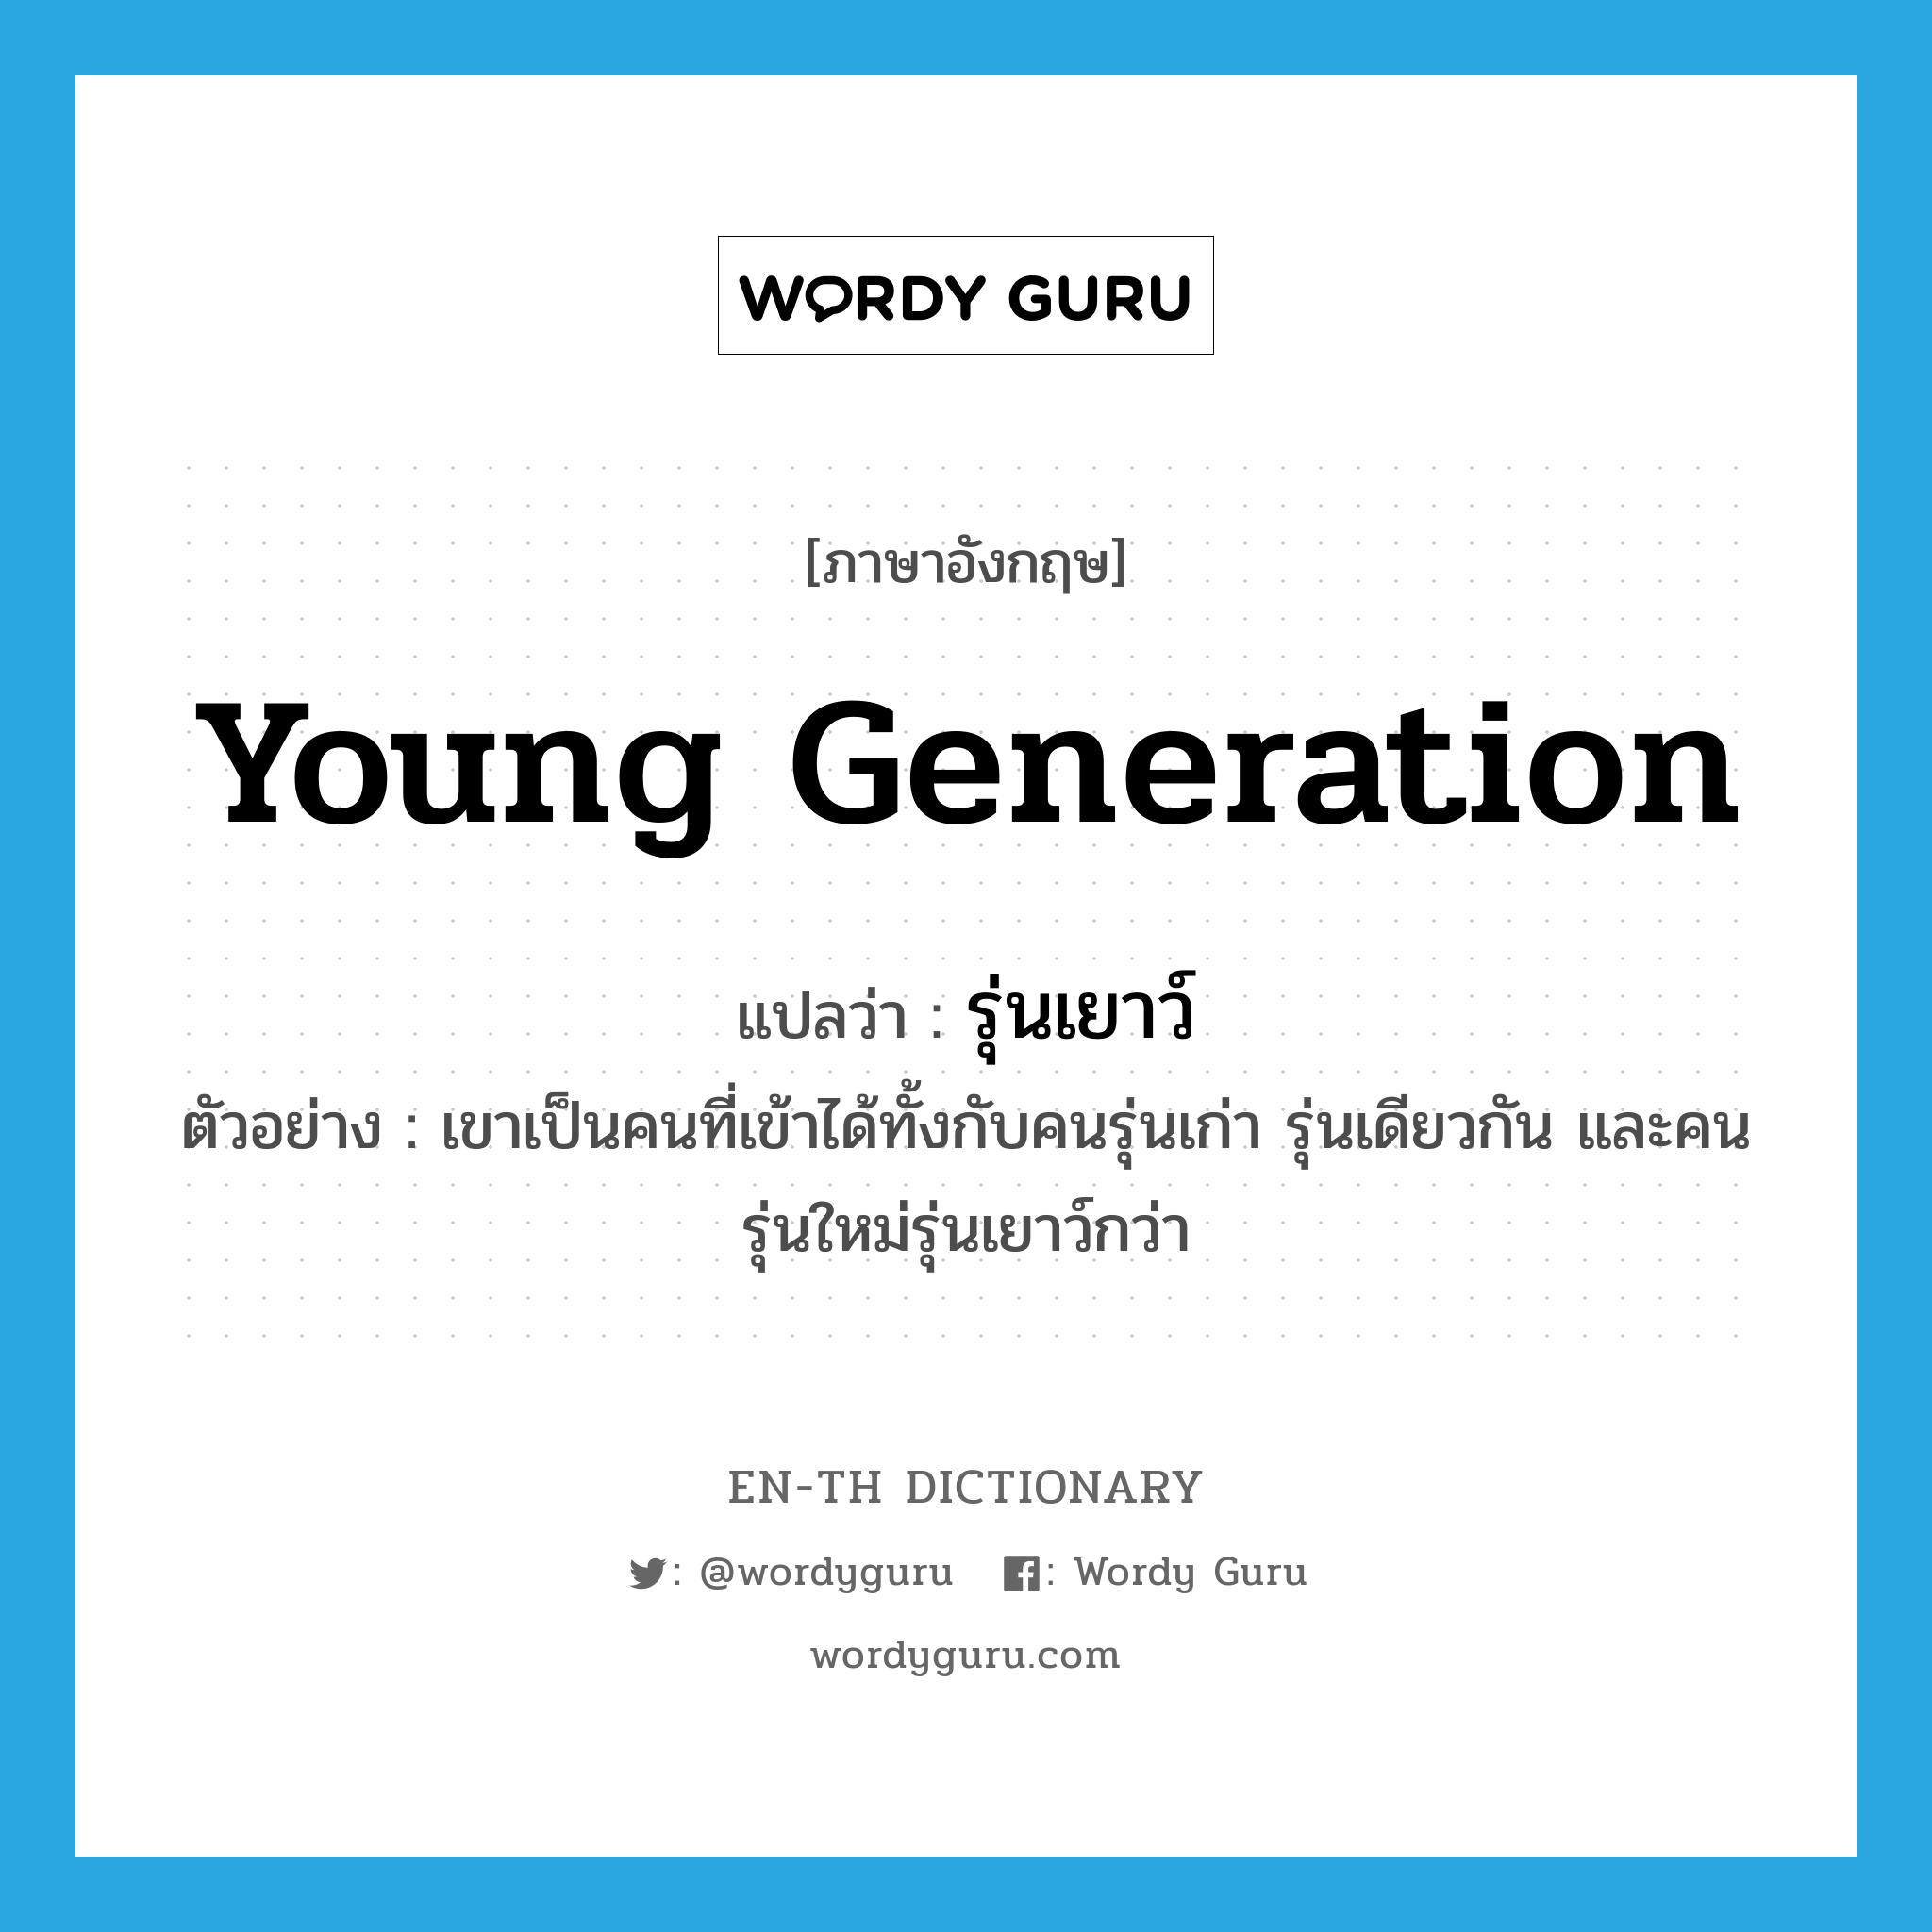 รุ่นเยาว์ ภาษาอังกฤษ?, คำศัพท์ภาษาอังกฤษ รุ่นเยาว์ แปลว่า young generation ประเภท N ตัวอย่าง เขาเป็นคนที่เข้าได้ทั้งกับคนรุ่นเก่า รุ่นเดียวกัน และคนรุ่นใหม่รุ่นเยาว์กว่า หมวด N